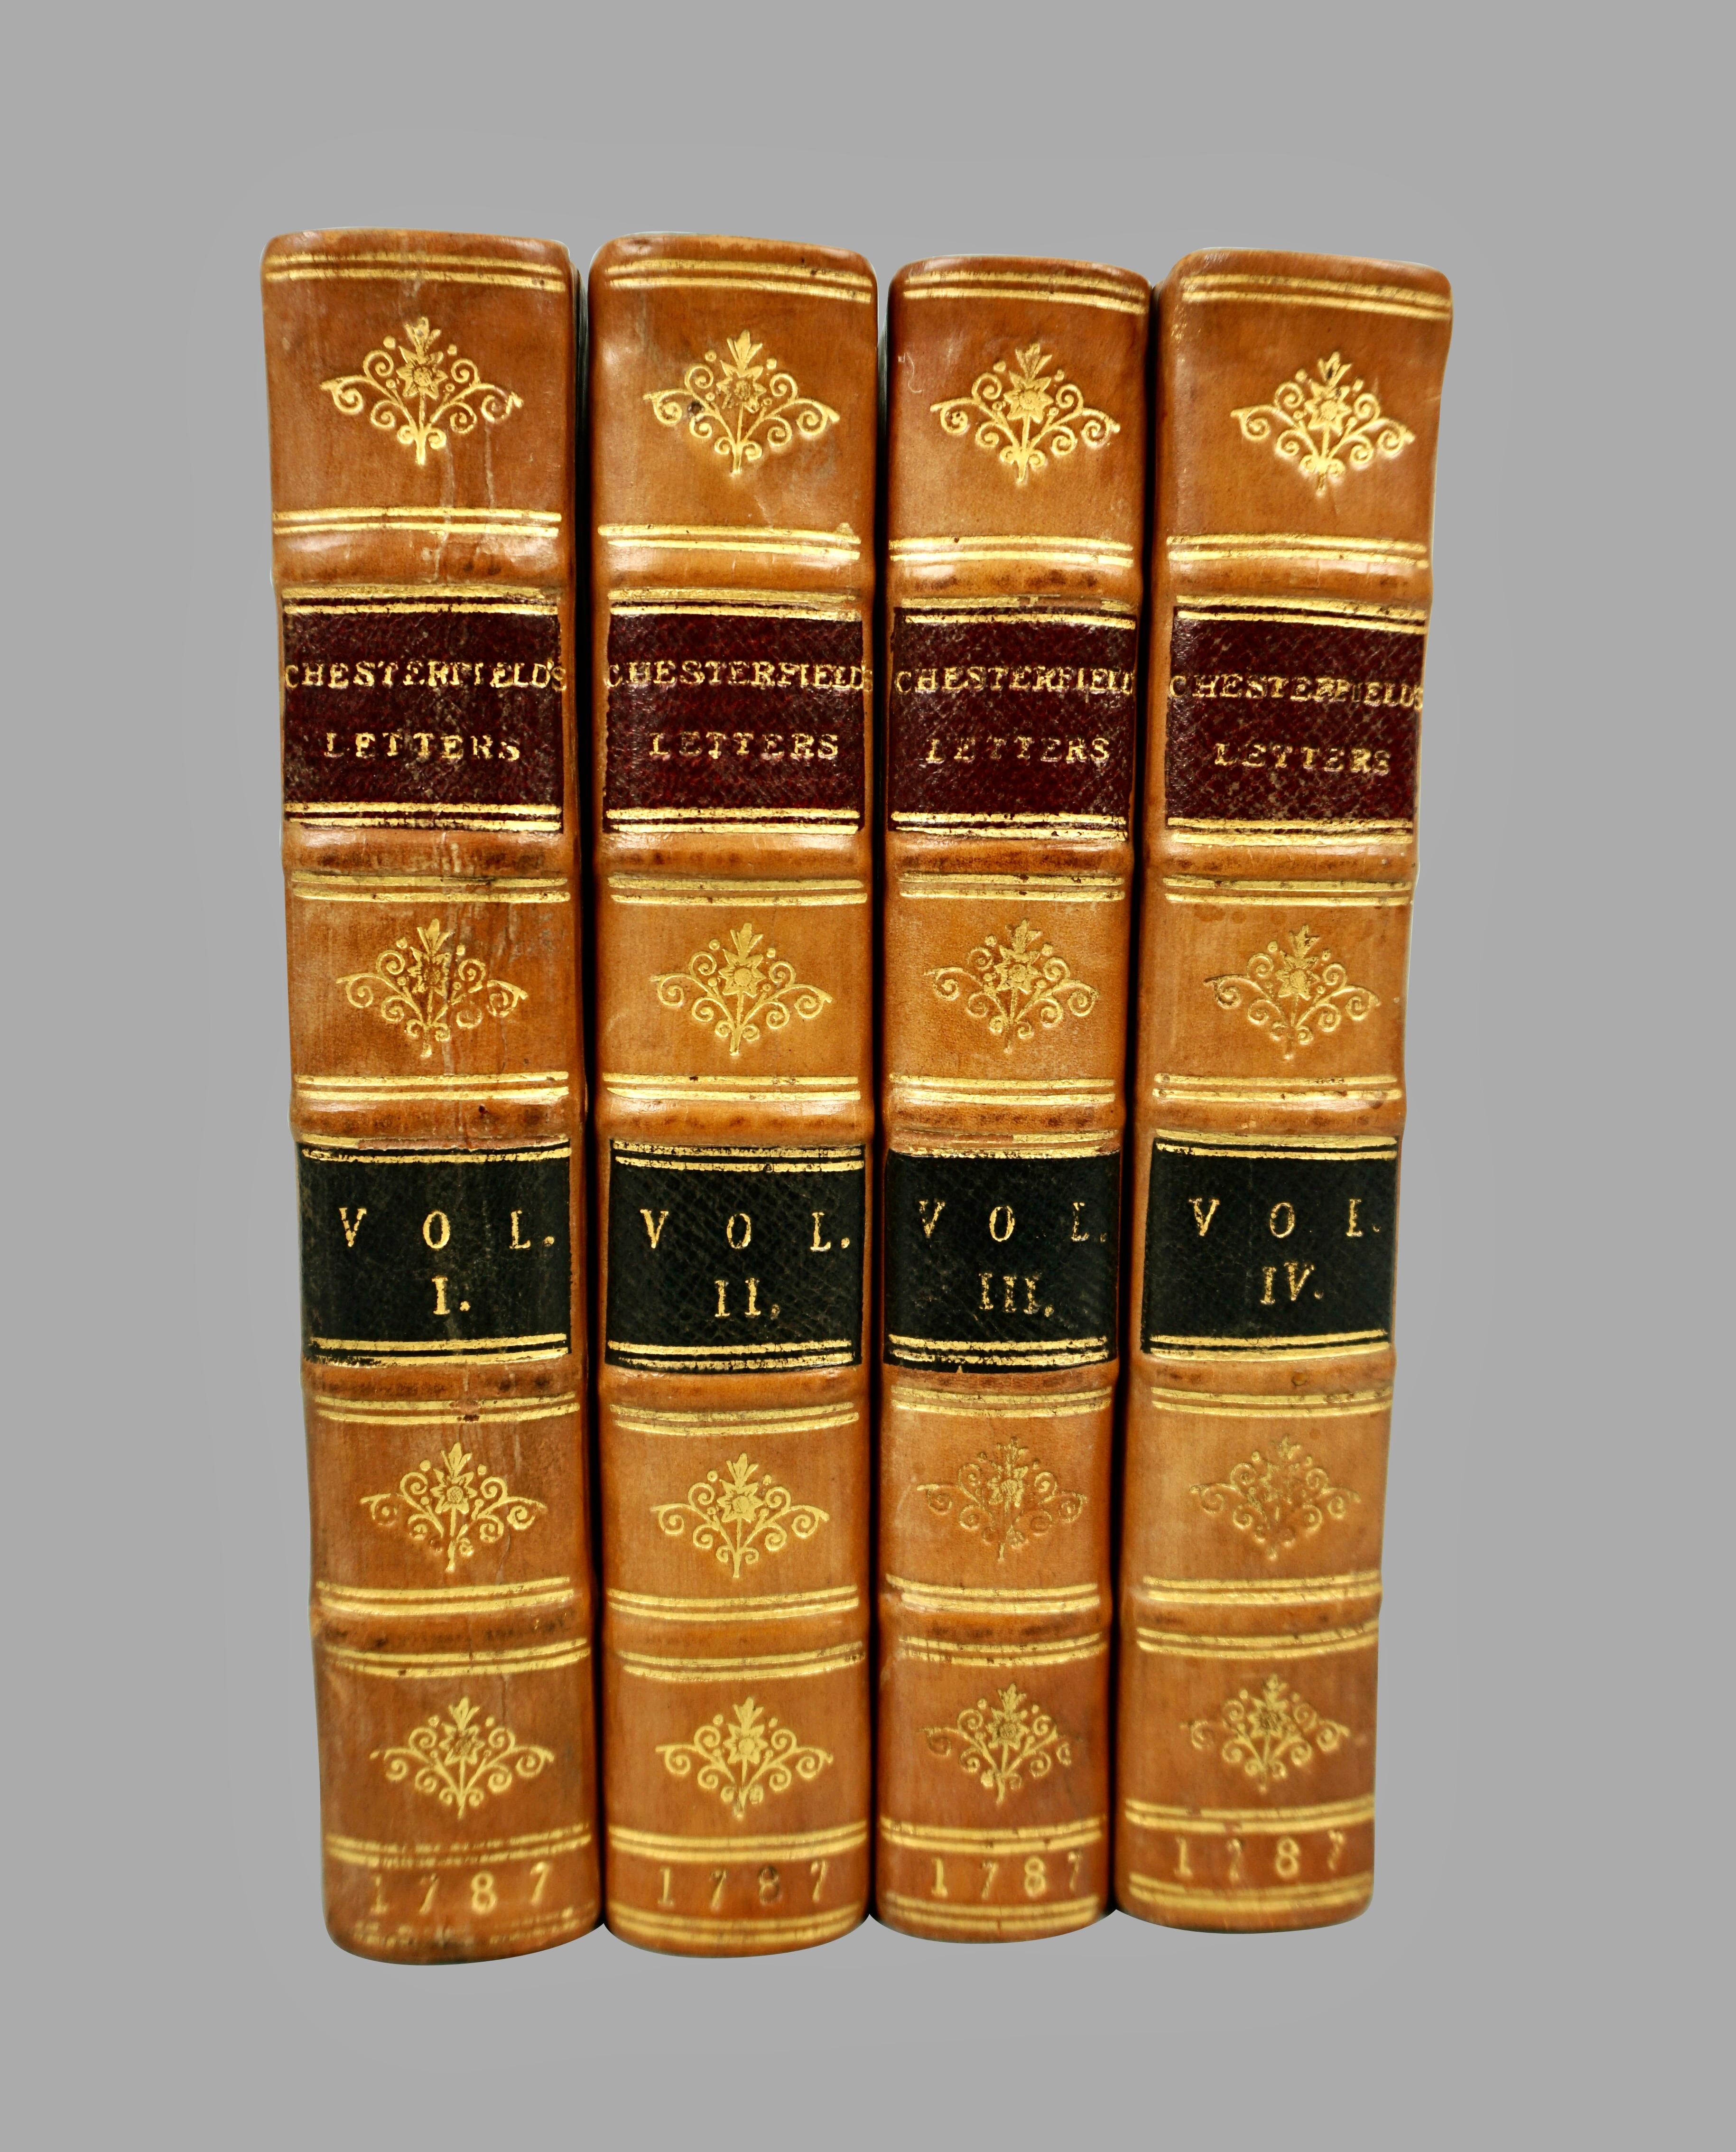 Briefe des Earl of Chesterfield an seinen Sohn und an Persönlichkeiten der Zeit in 4 Bänden in ihren ursprünglichen vollen Ledereinbänden, herausgegeben von J. Dodsley 1787 in London. Die Buchrücken sind mit erhabenen Bändern und Goldprägung